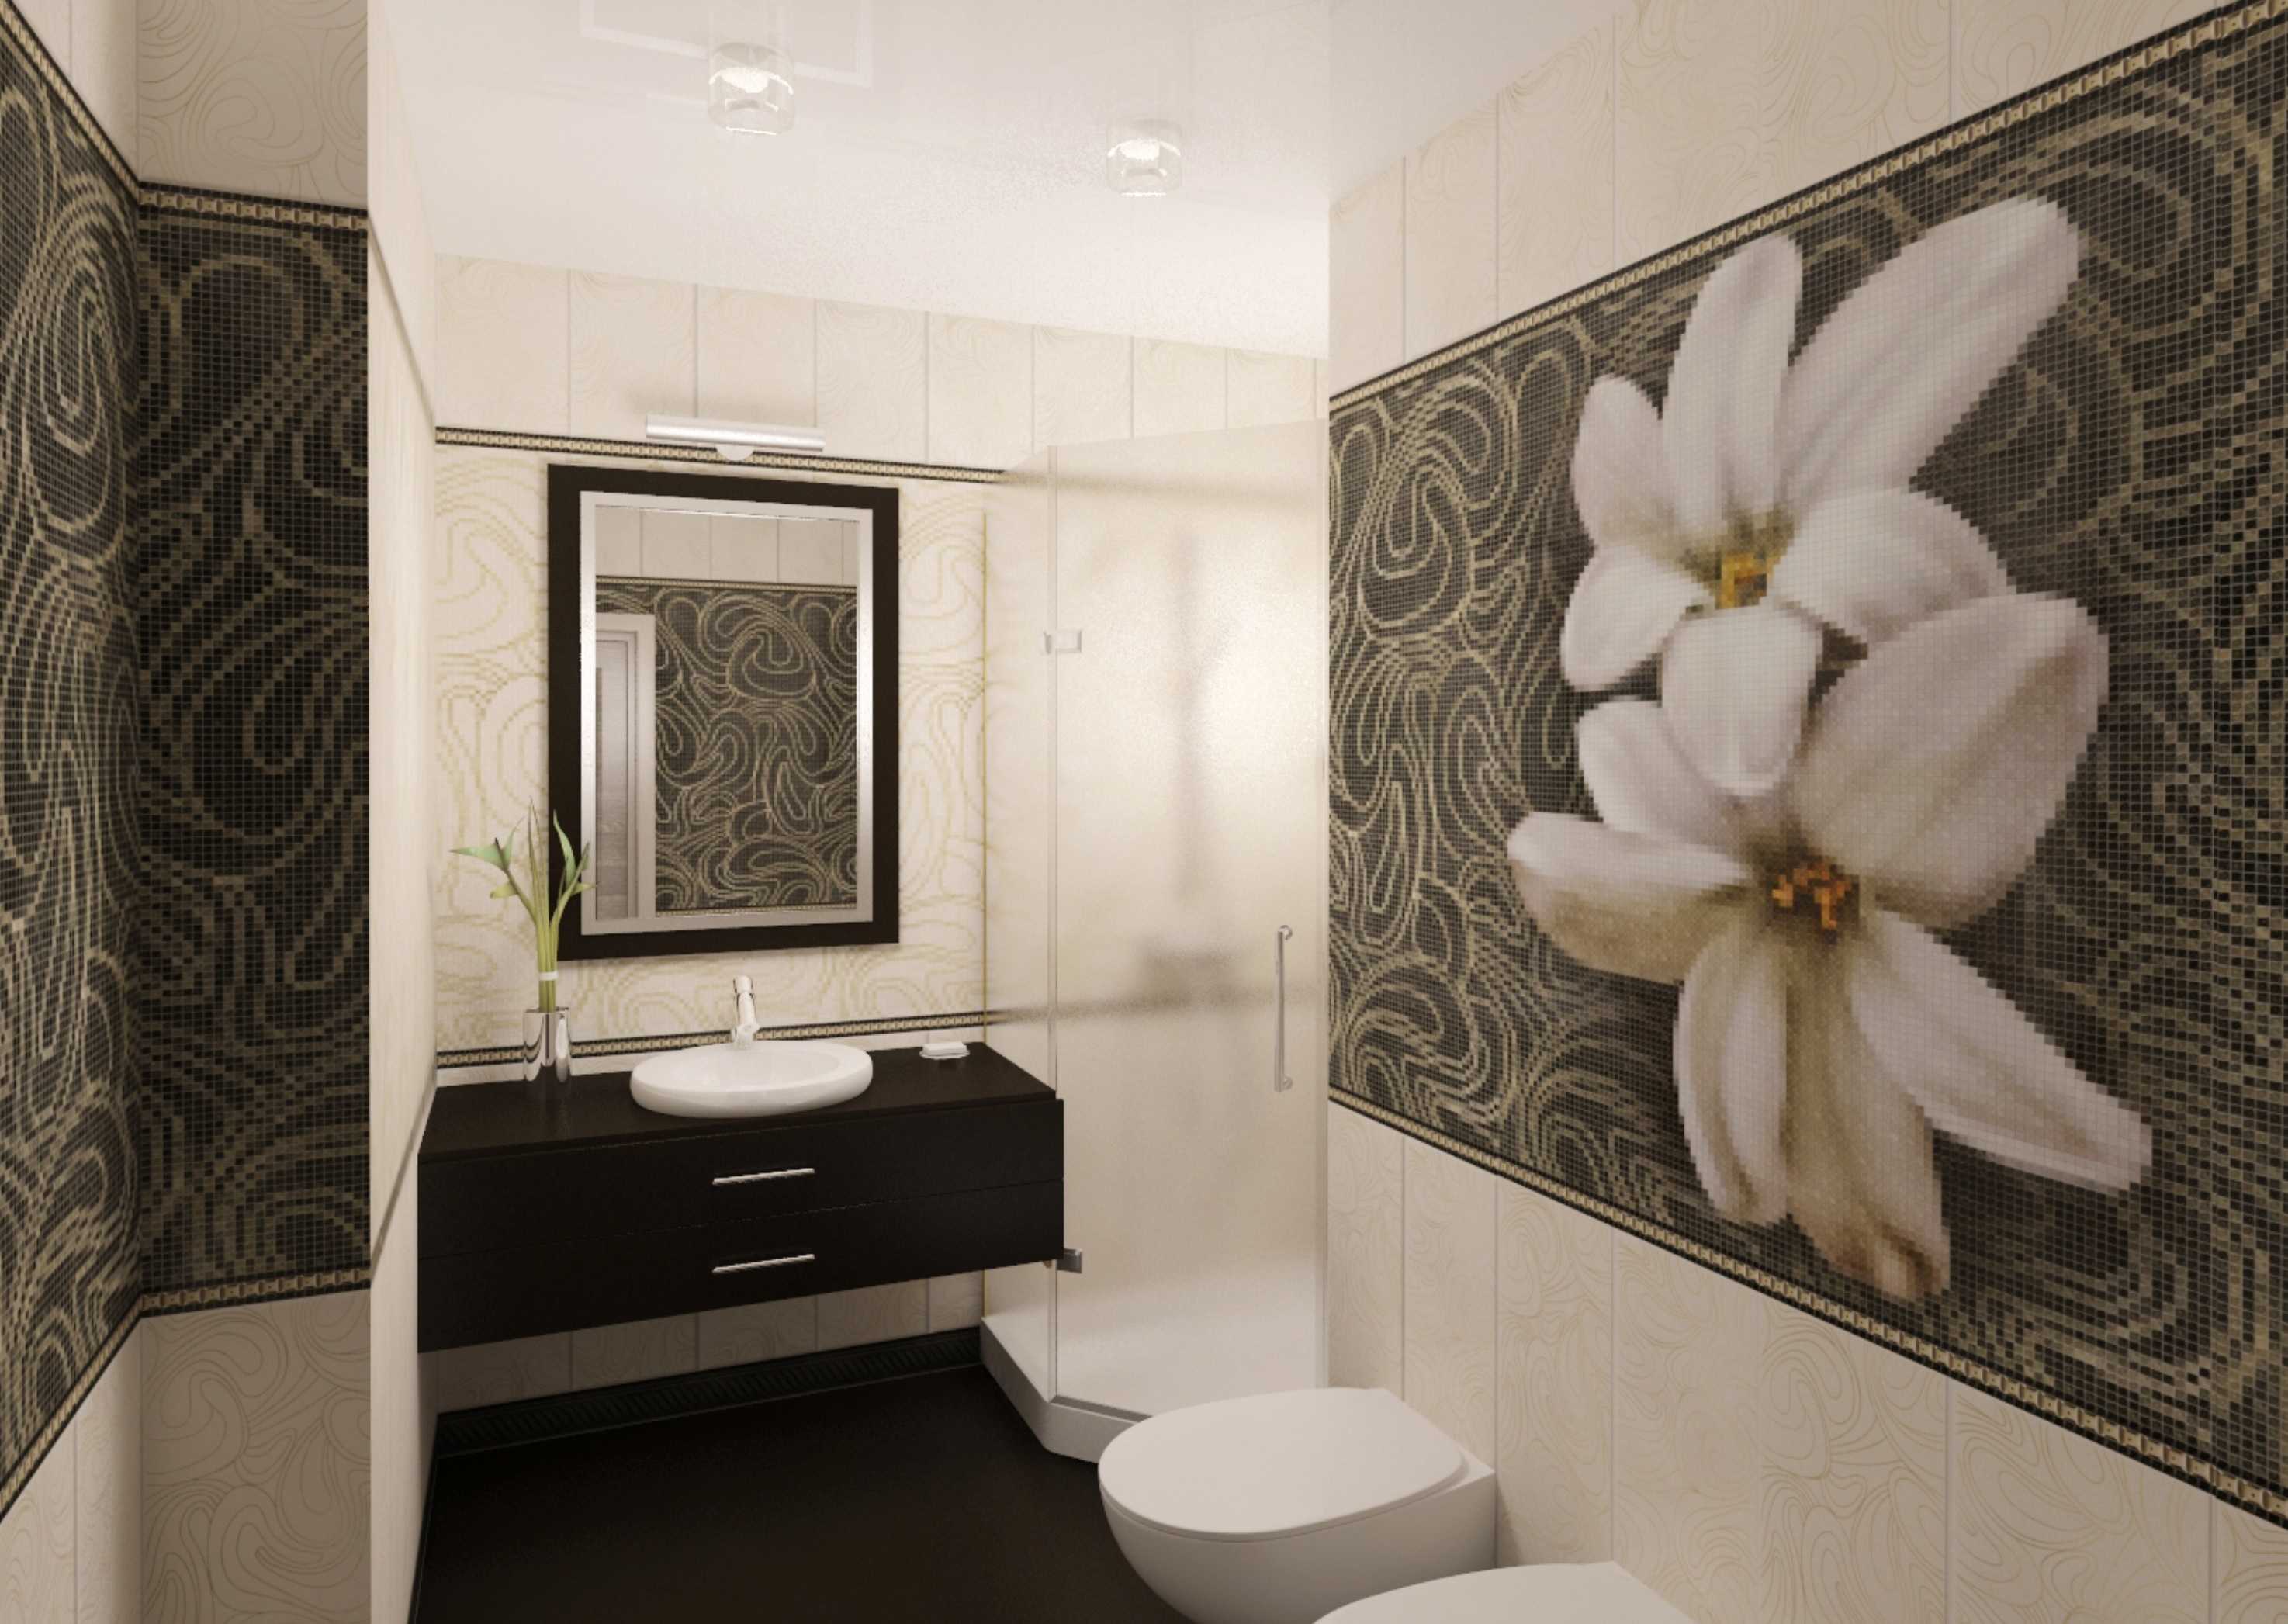 Панели пвх для ванной - 76 фото идей создания красивого дизайна